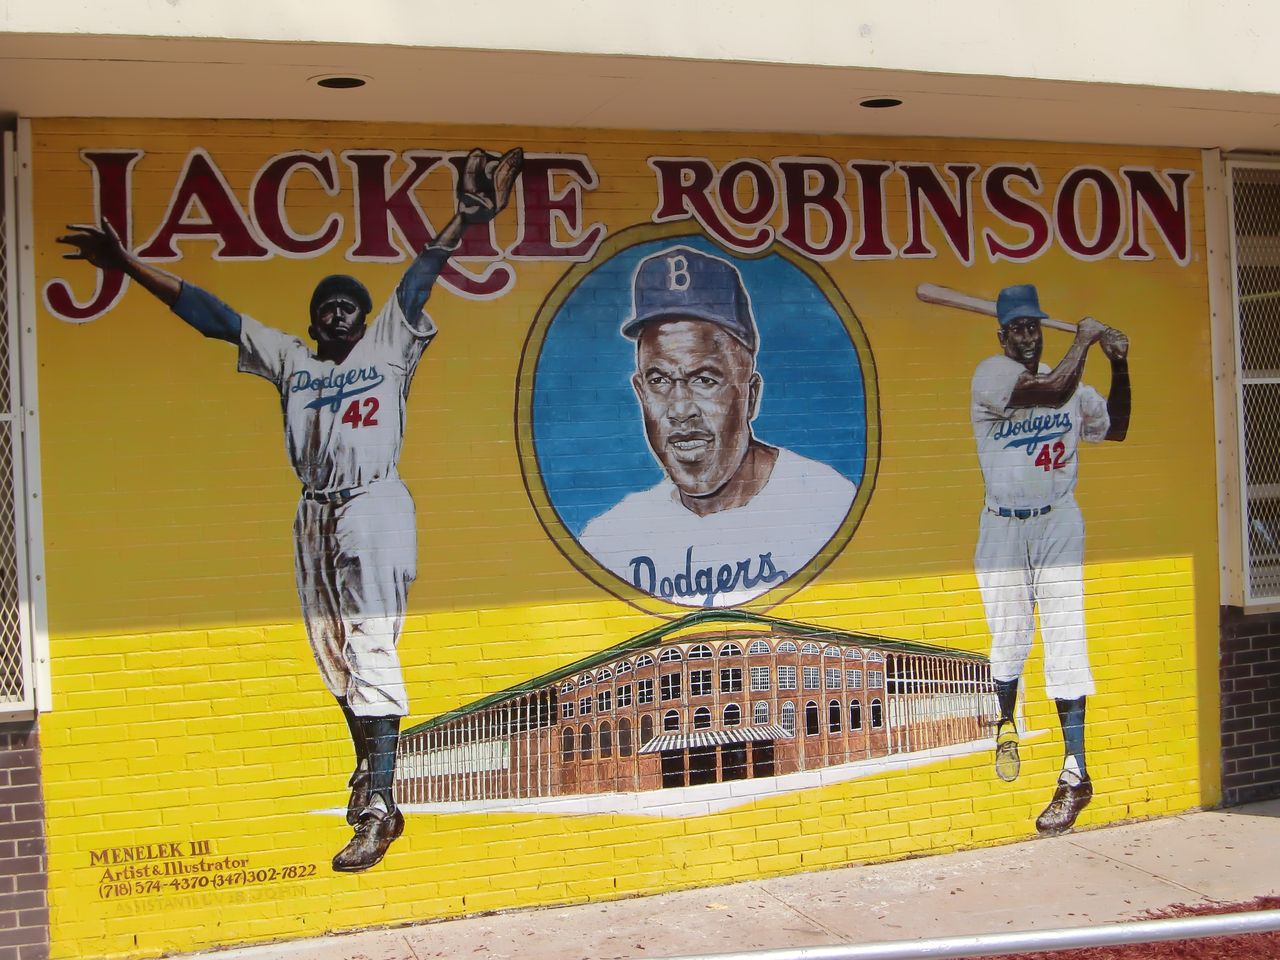 生誕100周年のジャッキー ロビンソン 功績は偉大だが神格化され過ぎで弊害も 豊浦彰太郎のmlbブログ Baseball Spoken Here